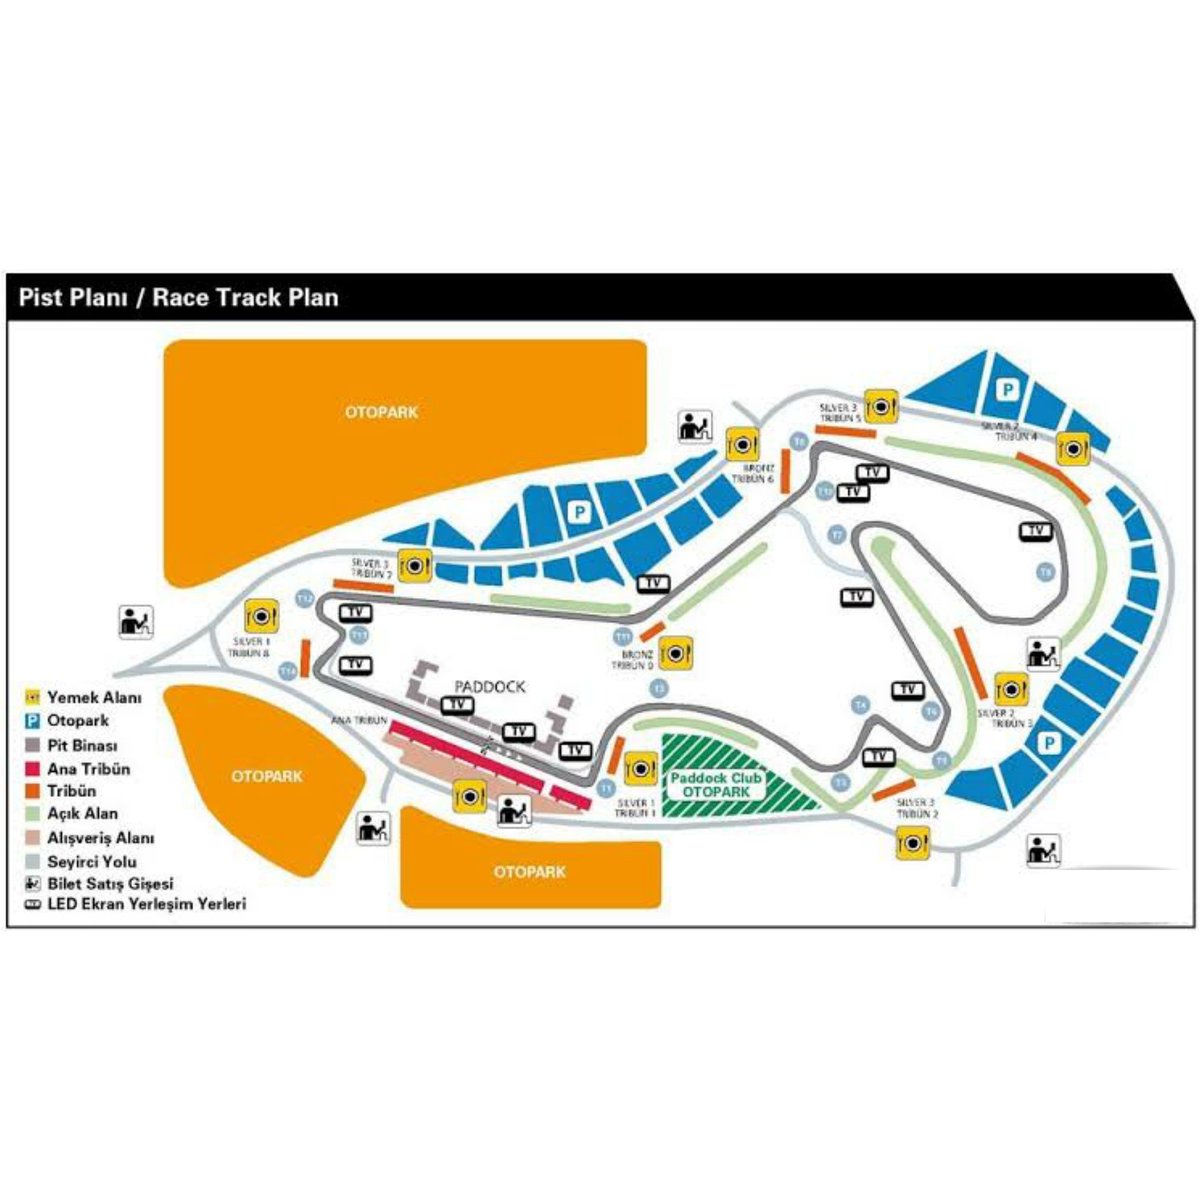 İşte 🇹🇷 Intercity İstanbul Park'ın pist planı!
•
#formula1 #f1 #TürkiyeGP #TurkishGP #intercityistanbulpark